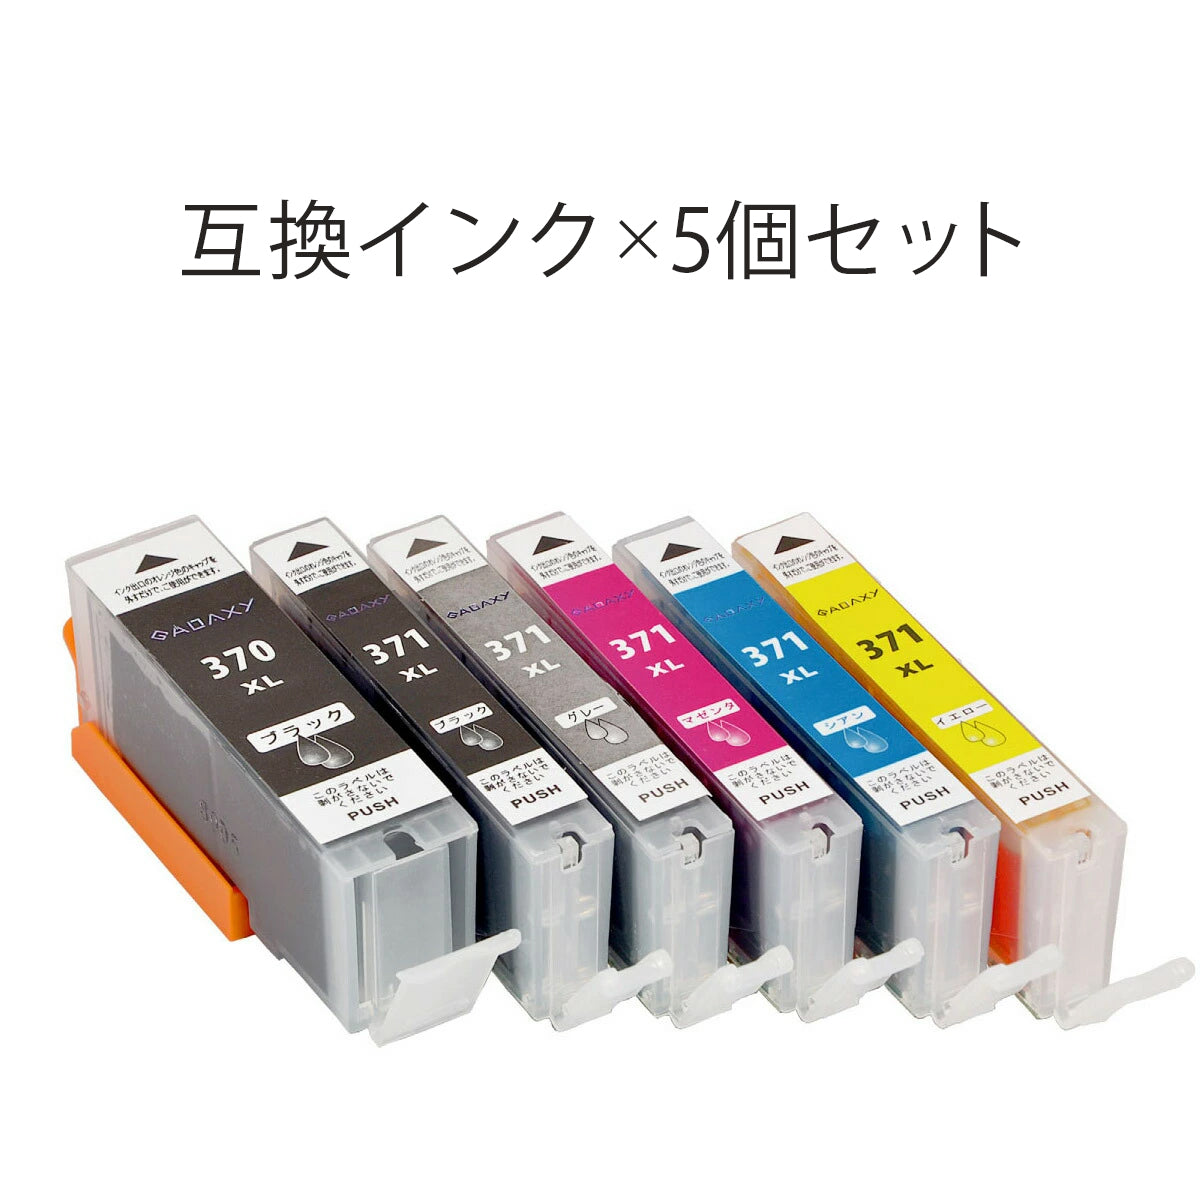 キヤノン BCI-371XL 370XL 互換インク 5色マルチパック 大容量タイプ BCI-371XL*370XL 5MP 互換インク